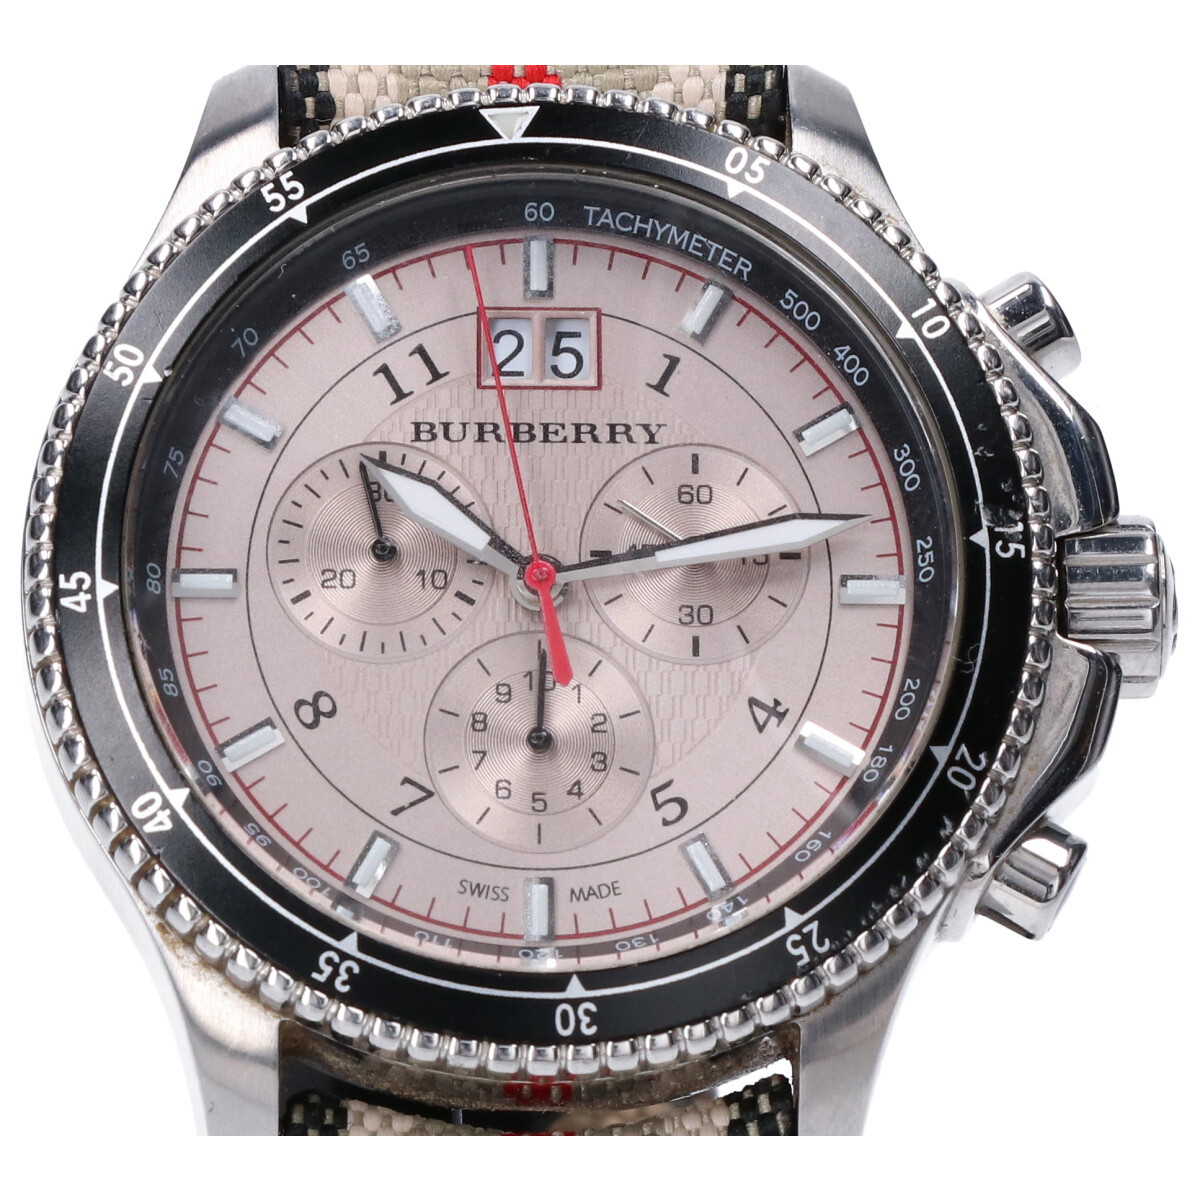 バーバリーのBU7600 エンデュランス クロノグラフ 時計の買取実績です。